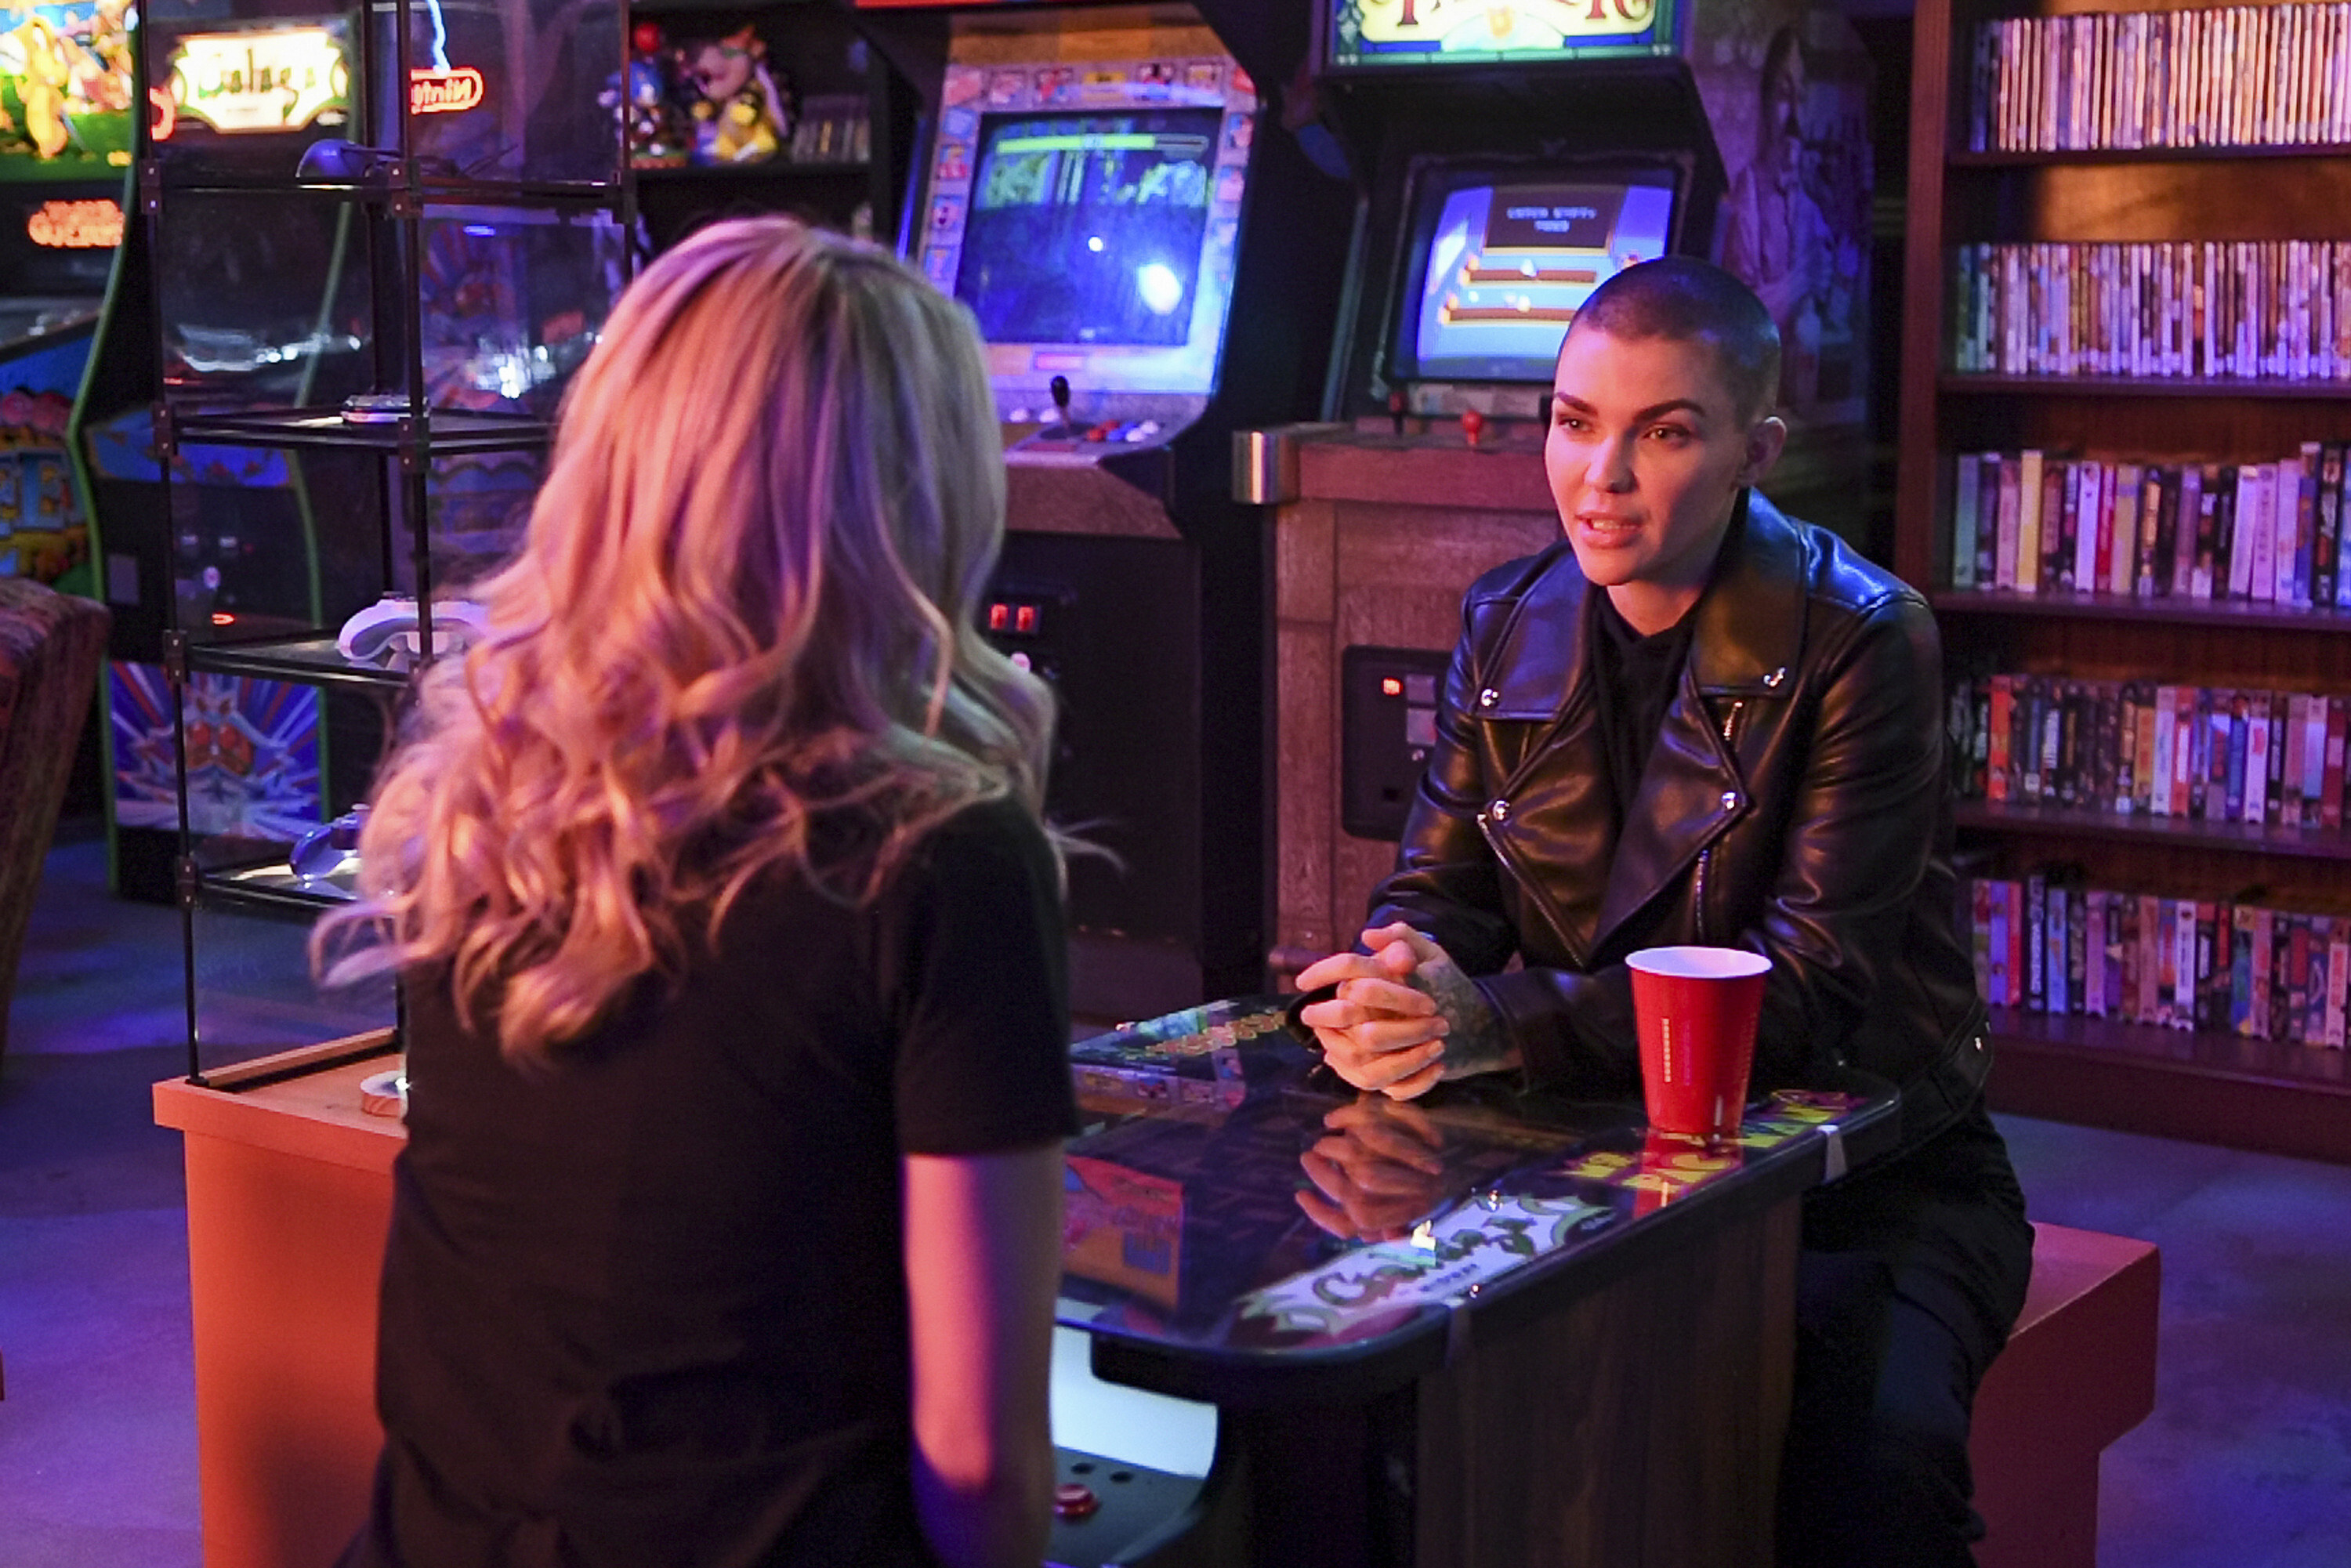 two women talk in an arcade